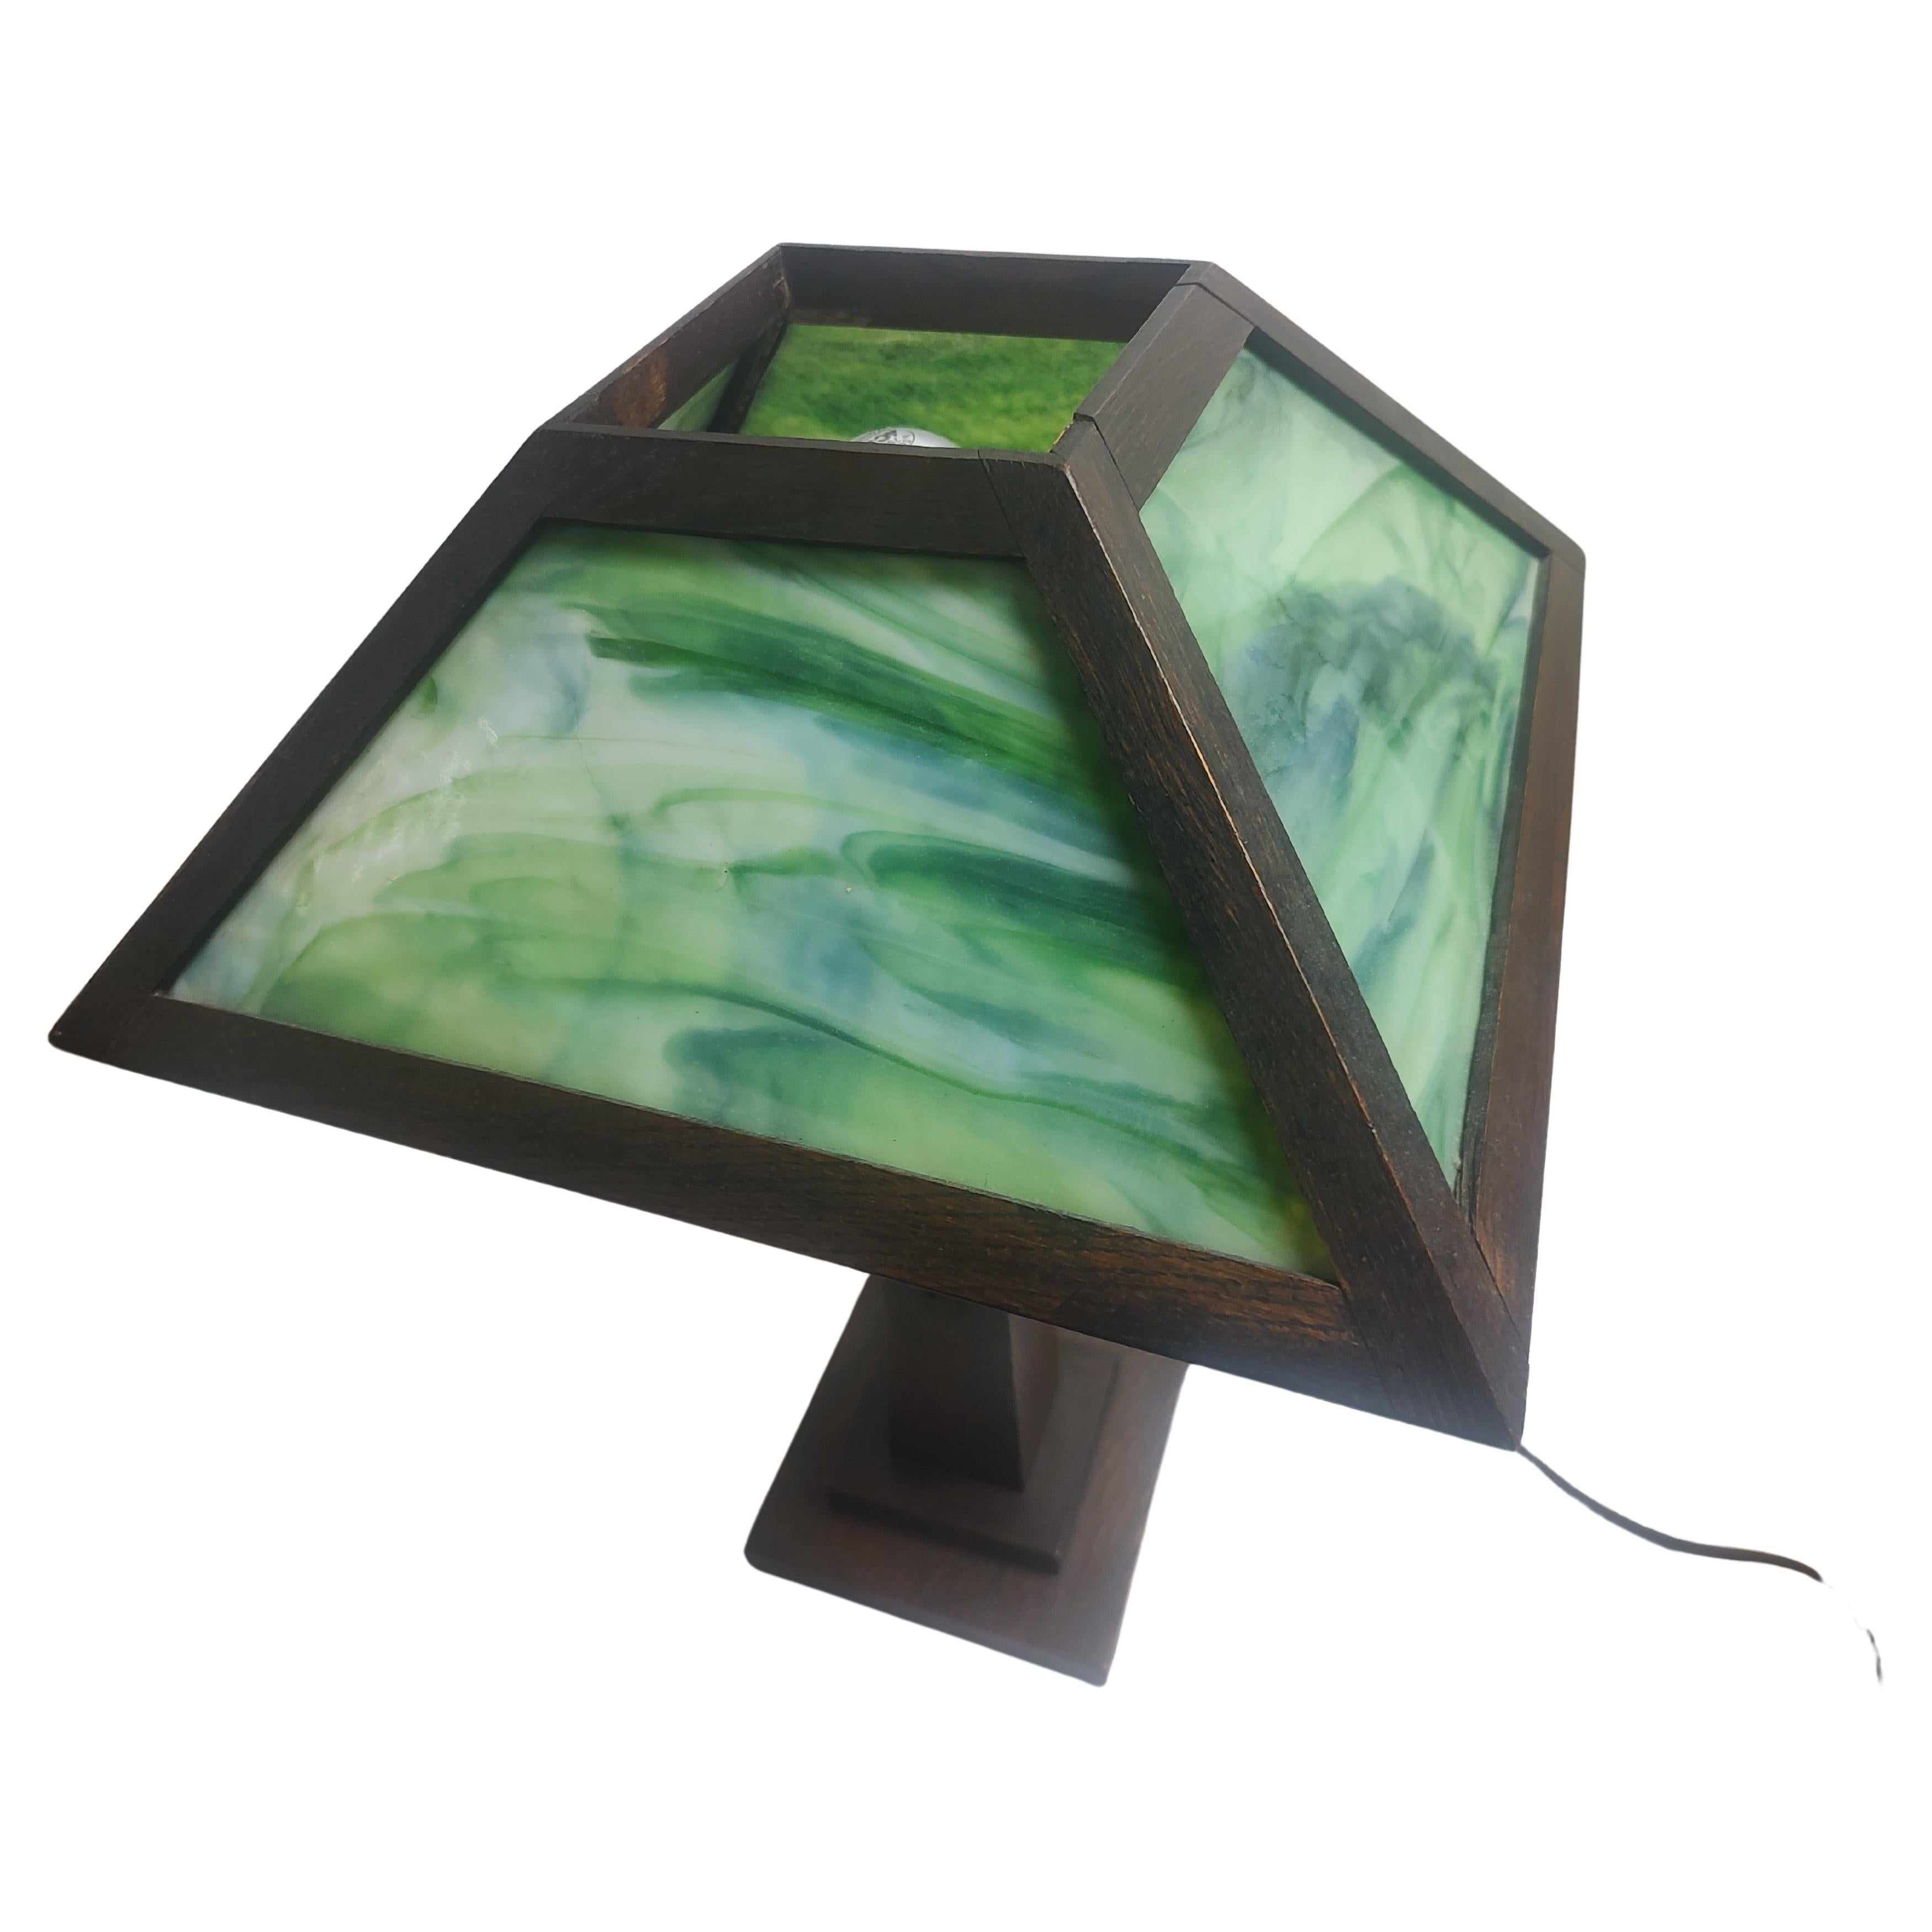 Espectacular y temprana versión de la lámpara de mesa Mission Arts & Crafts, era una lámpara de aceite y fue convertida profesionalmente a eléctrica con el máximo cuidado y respeto a la pieza. Precioso cristal de escoria verde y roble aserrado en